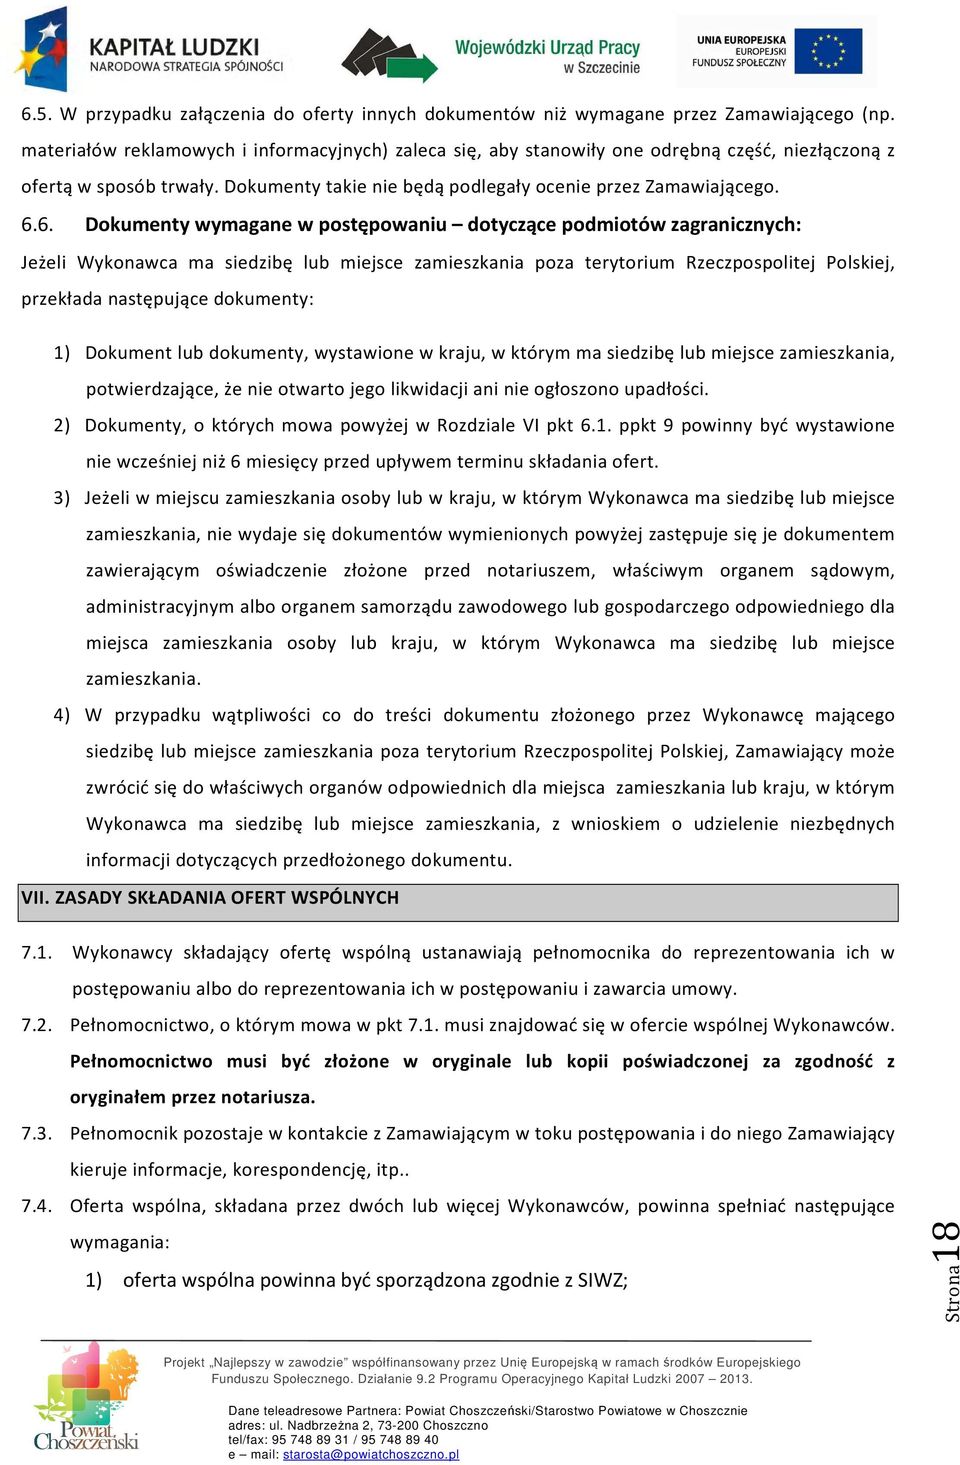 6. Dokumenty wymagane w postępowaniu dotyczące podmiotów zagranicznych: Jeżeli Wykonawca ma siedzibę lub miejsce zamieszkania poza terytorium Rzeczpospolitej Polskiej, przekłada następujące